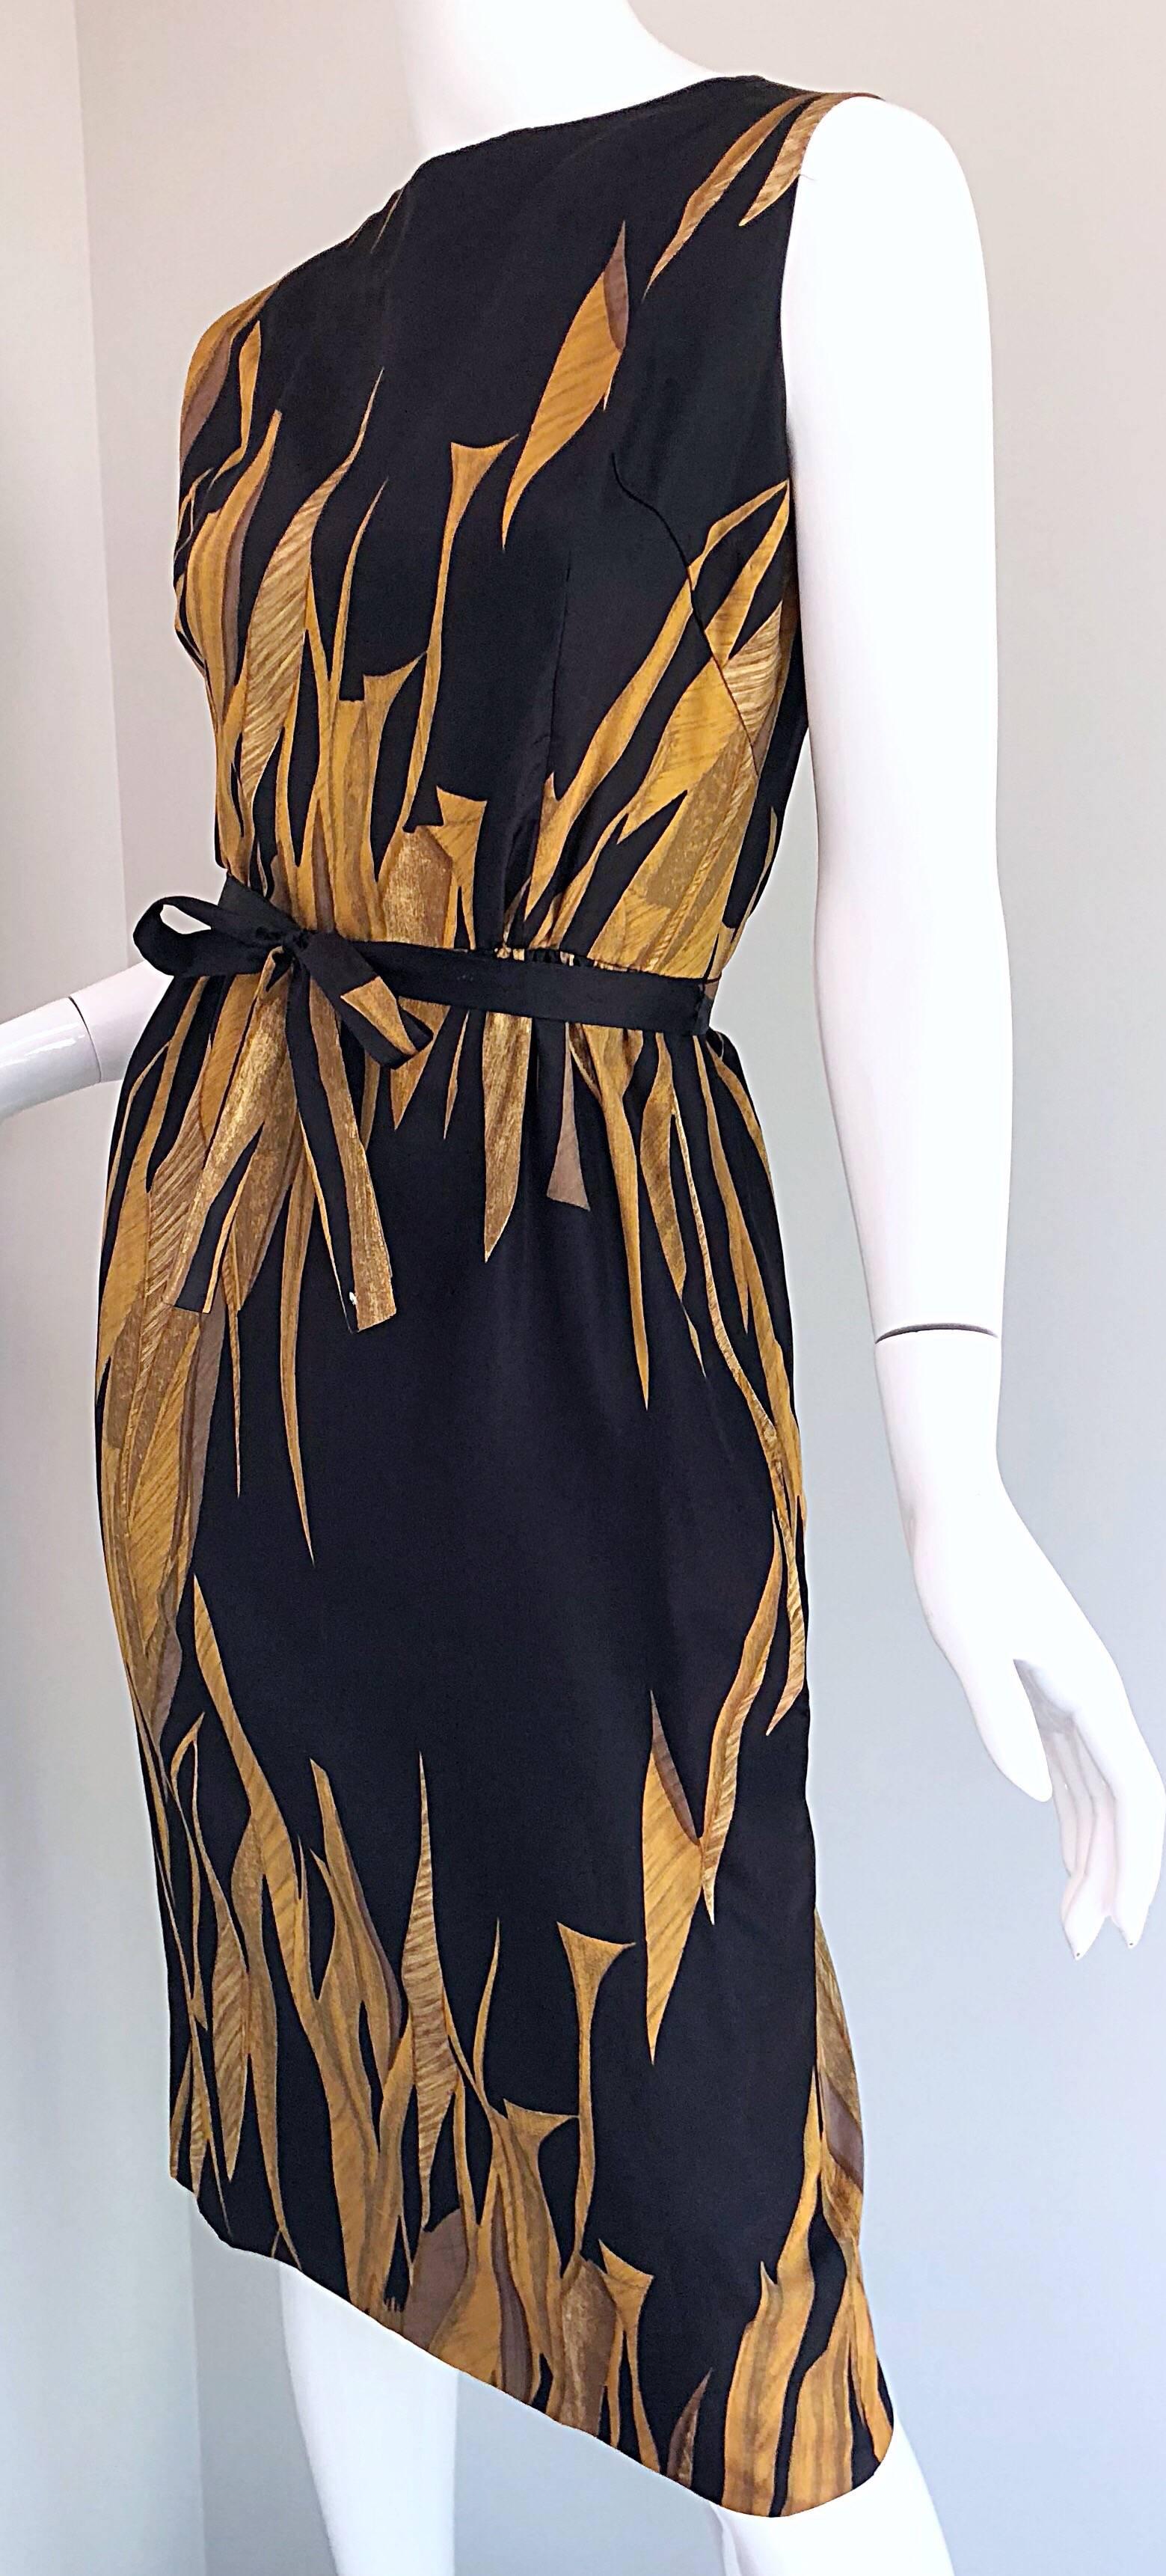 Rare 1950s Neiman Marcus Black + Gold Wheat Print Vintage Dress & Kimono Jacket 1